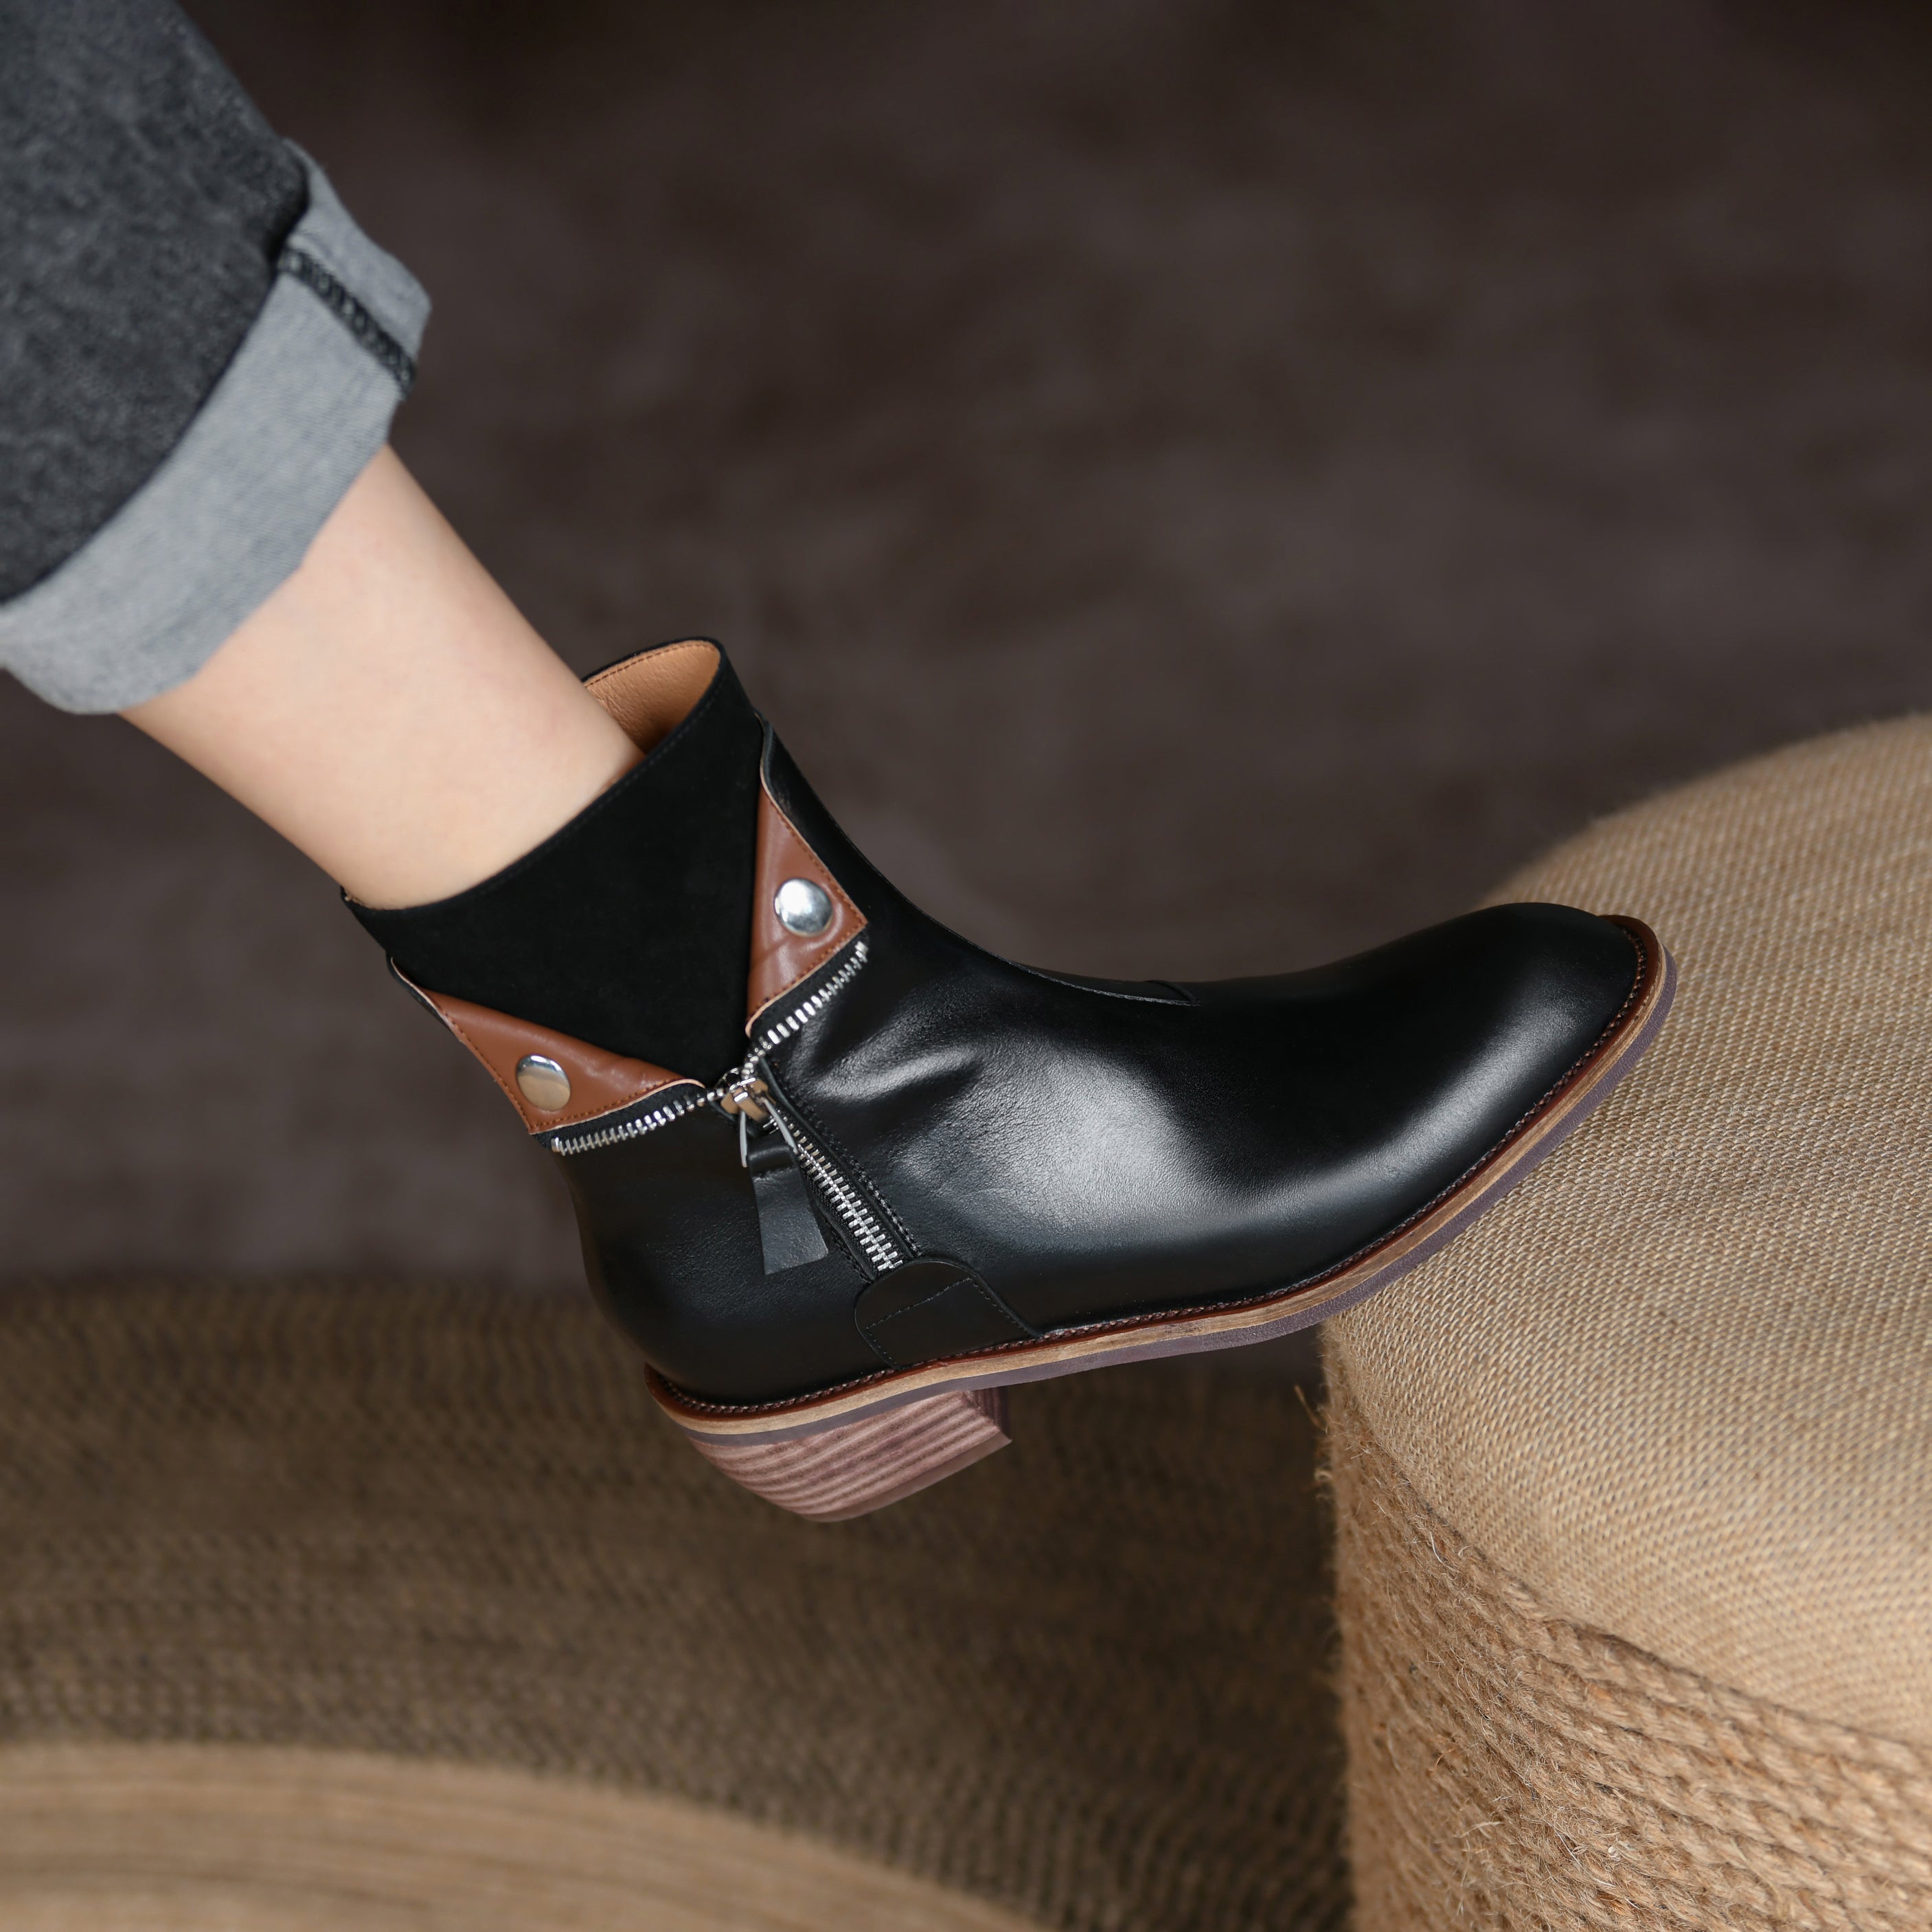 Bigsizeheels Polished round toe retro short boots - Black freeshipping - bigsizeheel®-size5-size15 -All Plus Sizes Available!